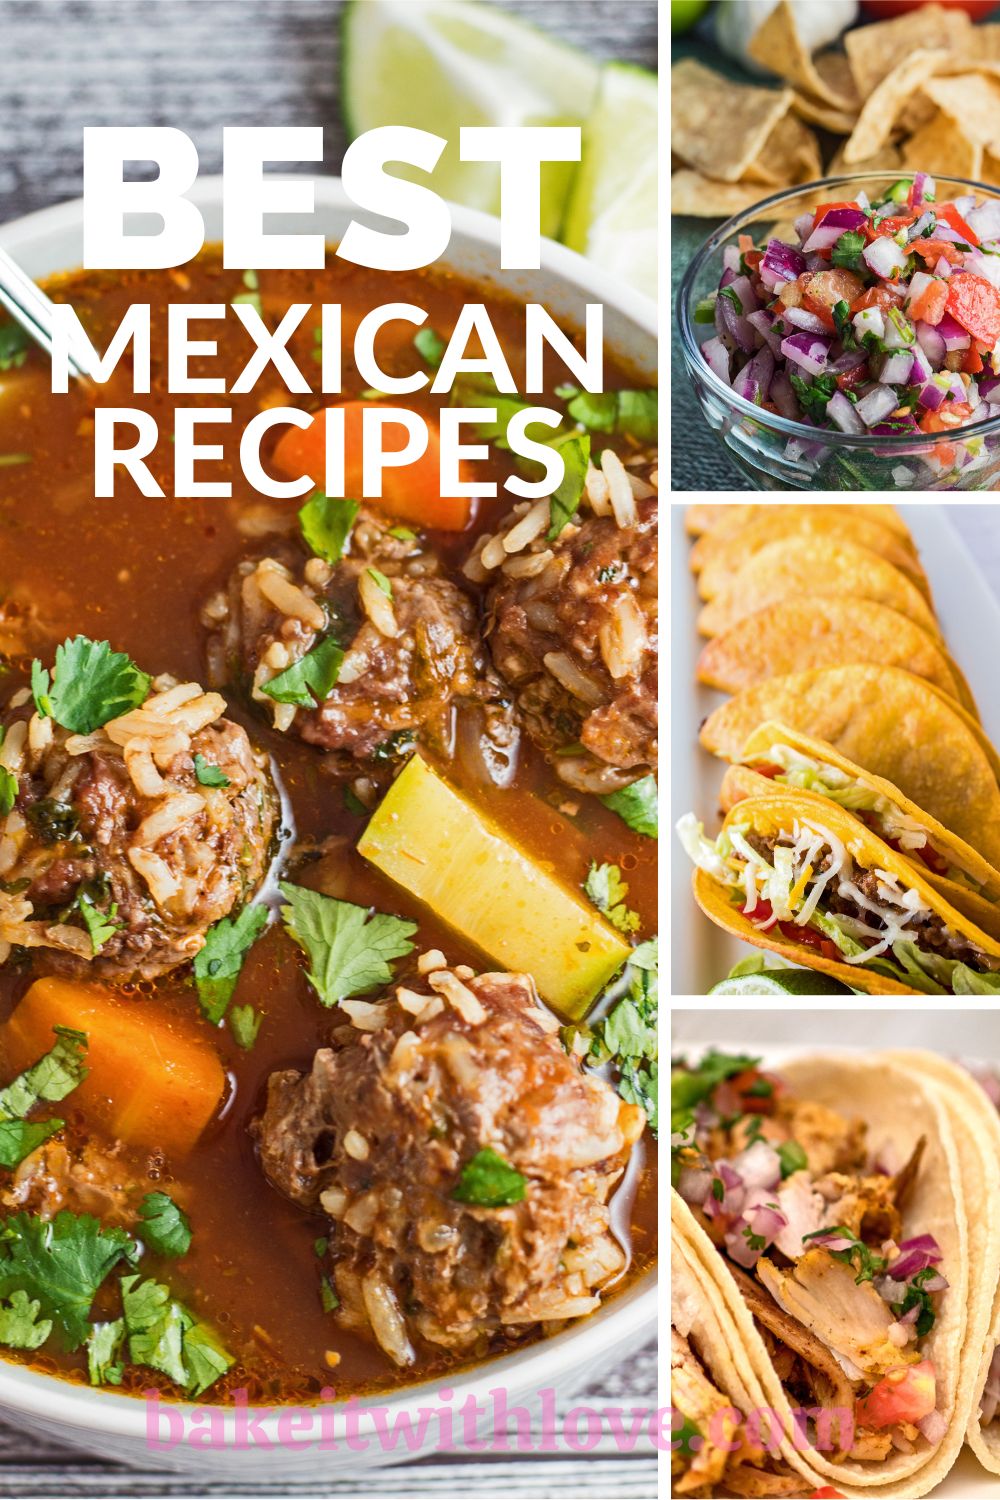 Най-добрите мексикански рецепти щифт за колаж с 4 представени изображения на рецепти.